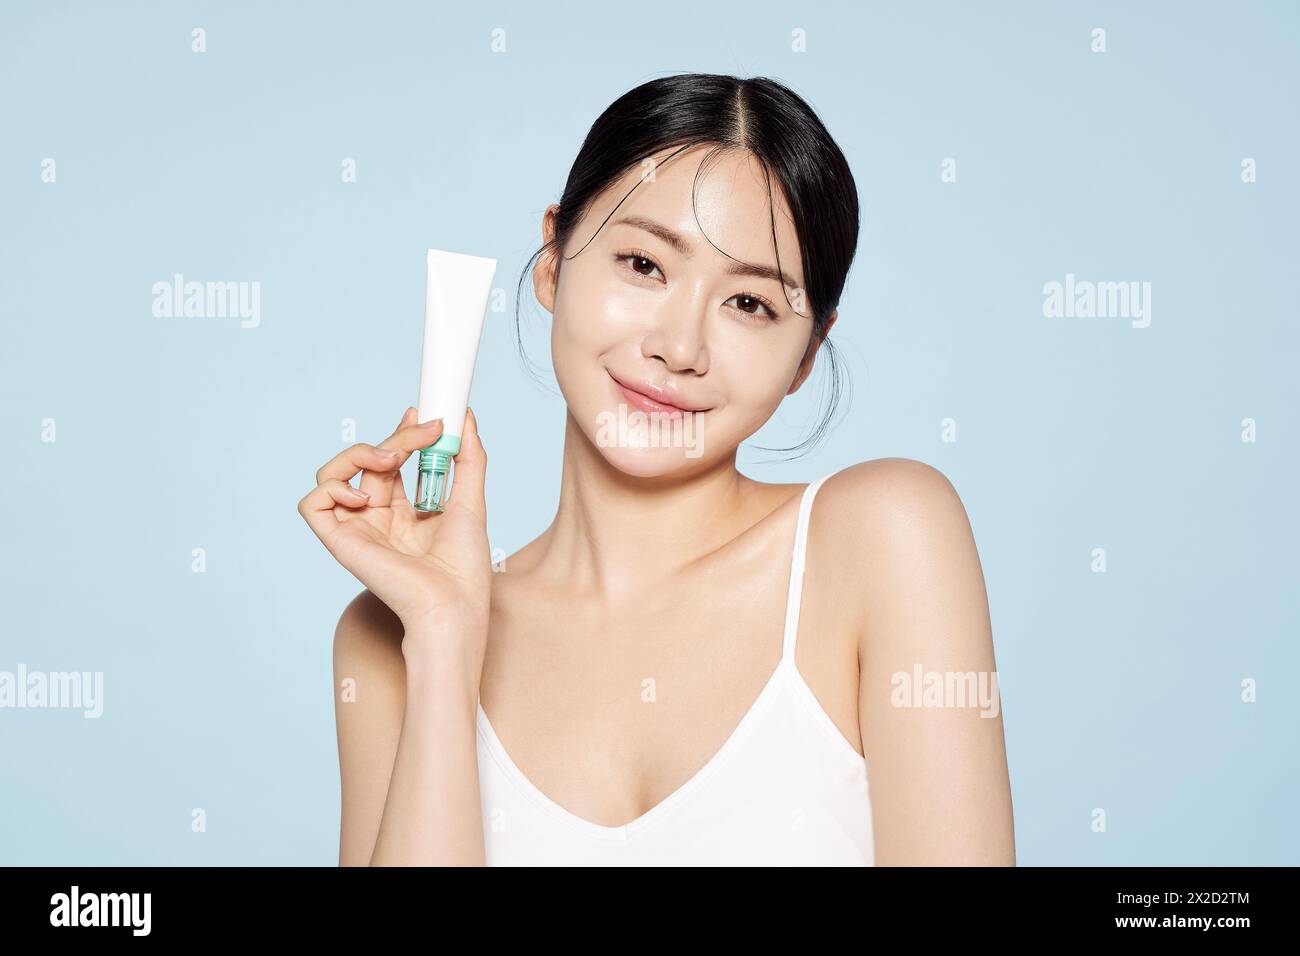 Asian Woman Poses With White Eye Cream Stock Photo